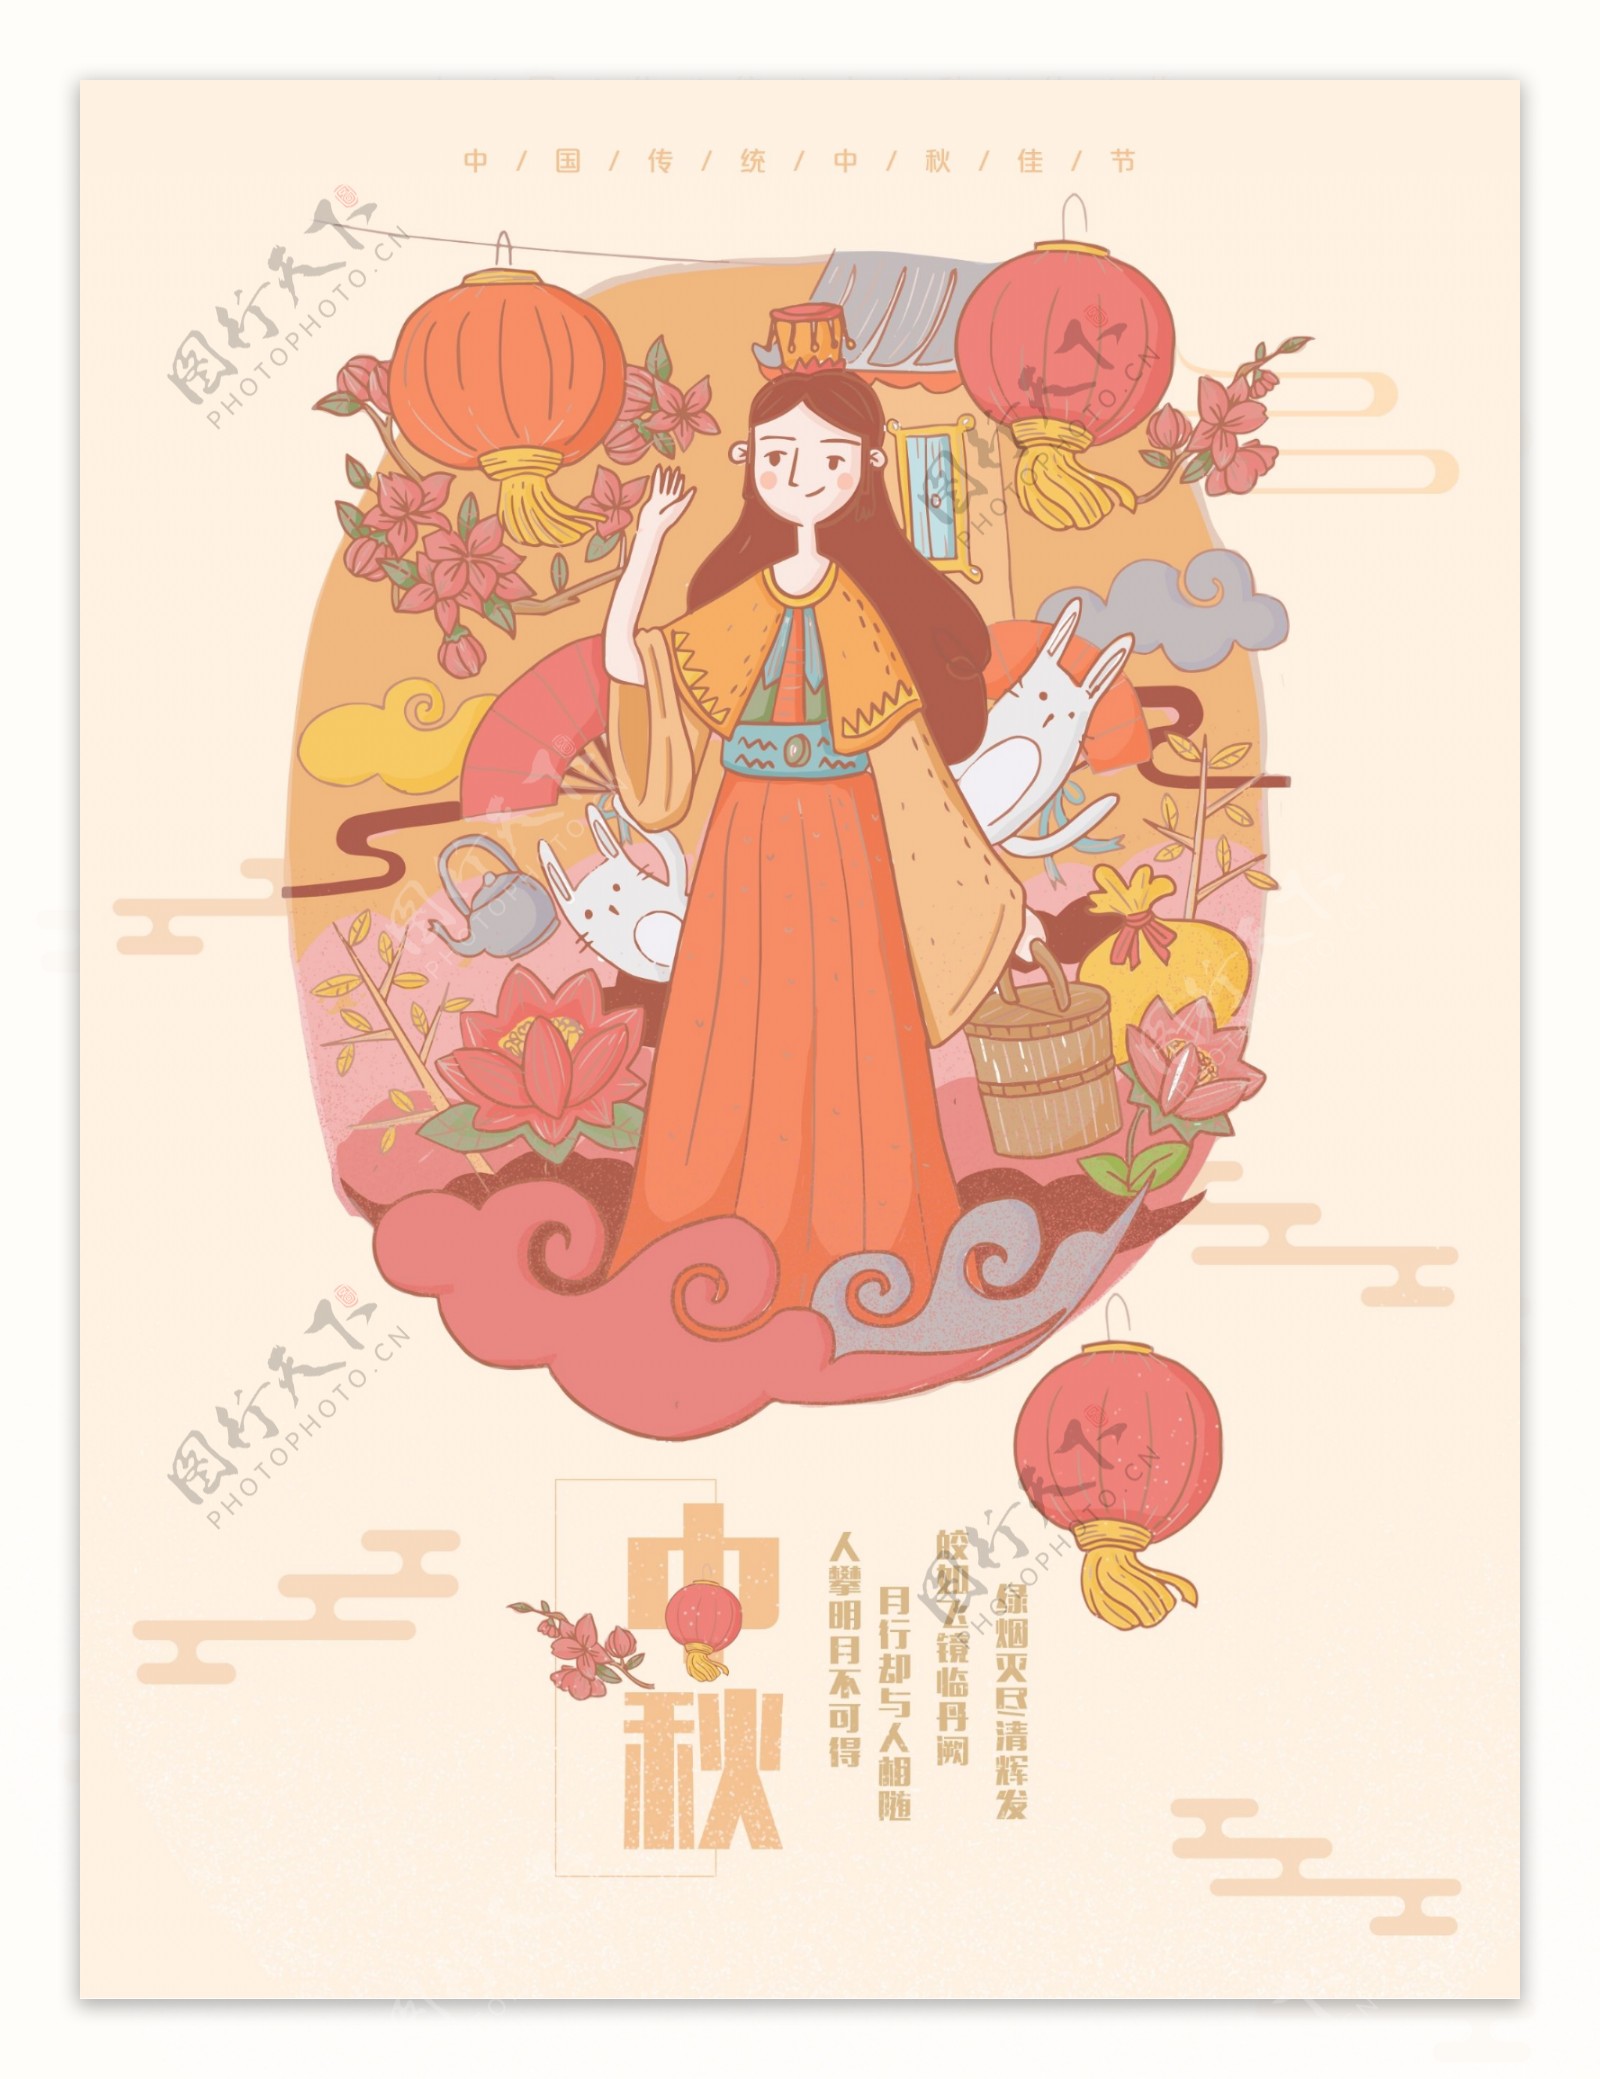 海报设计中秋节传统节日浓